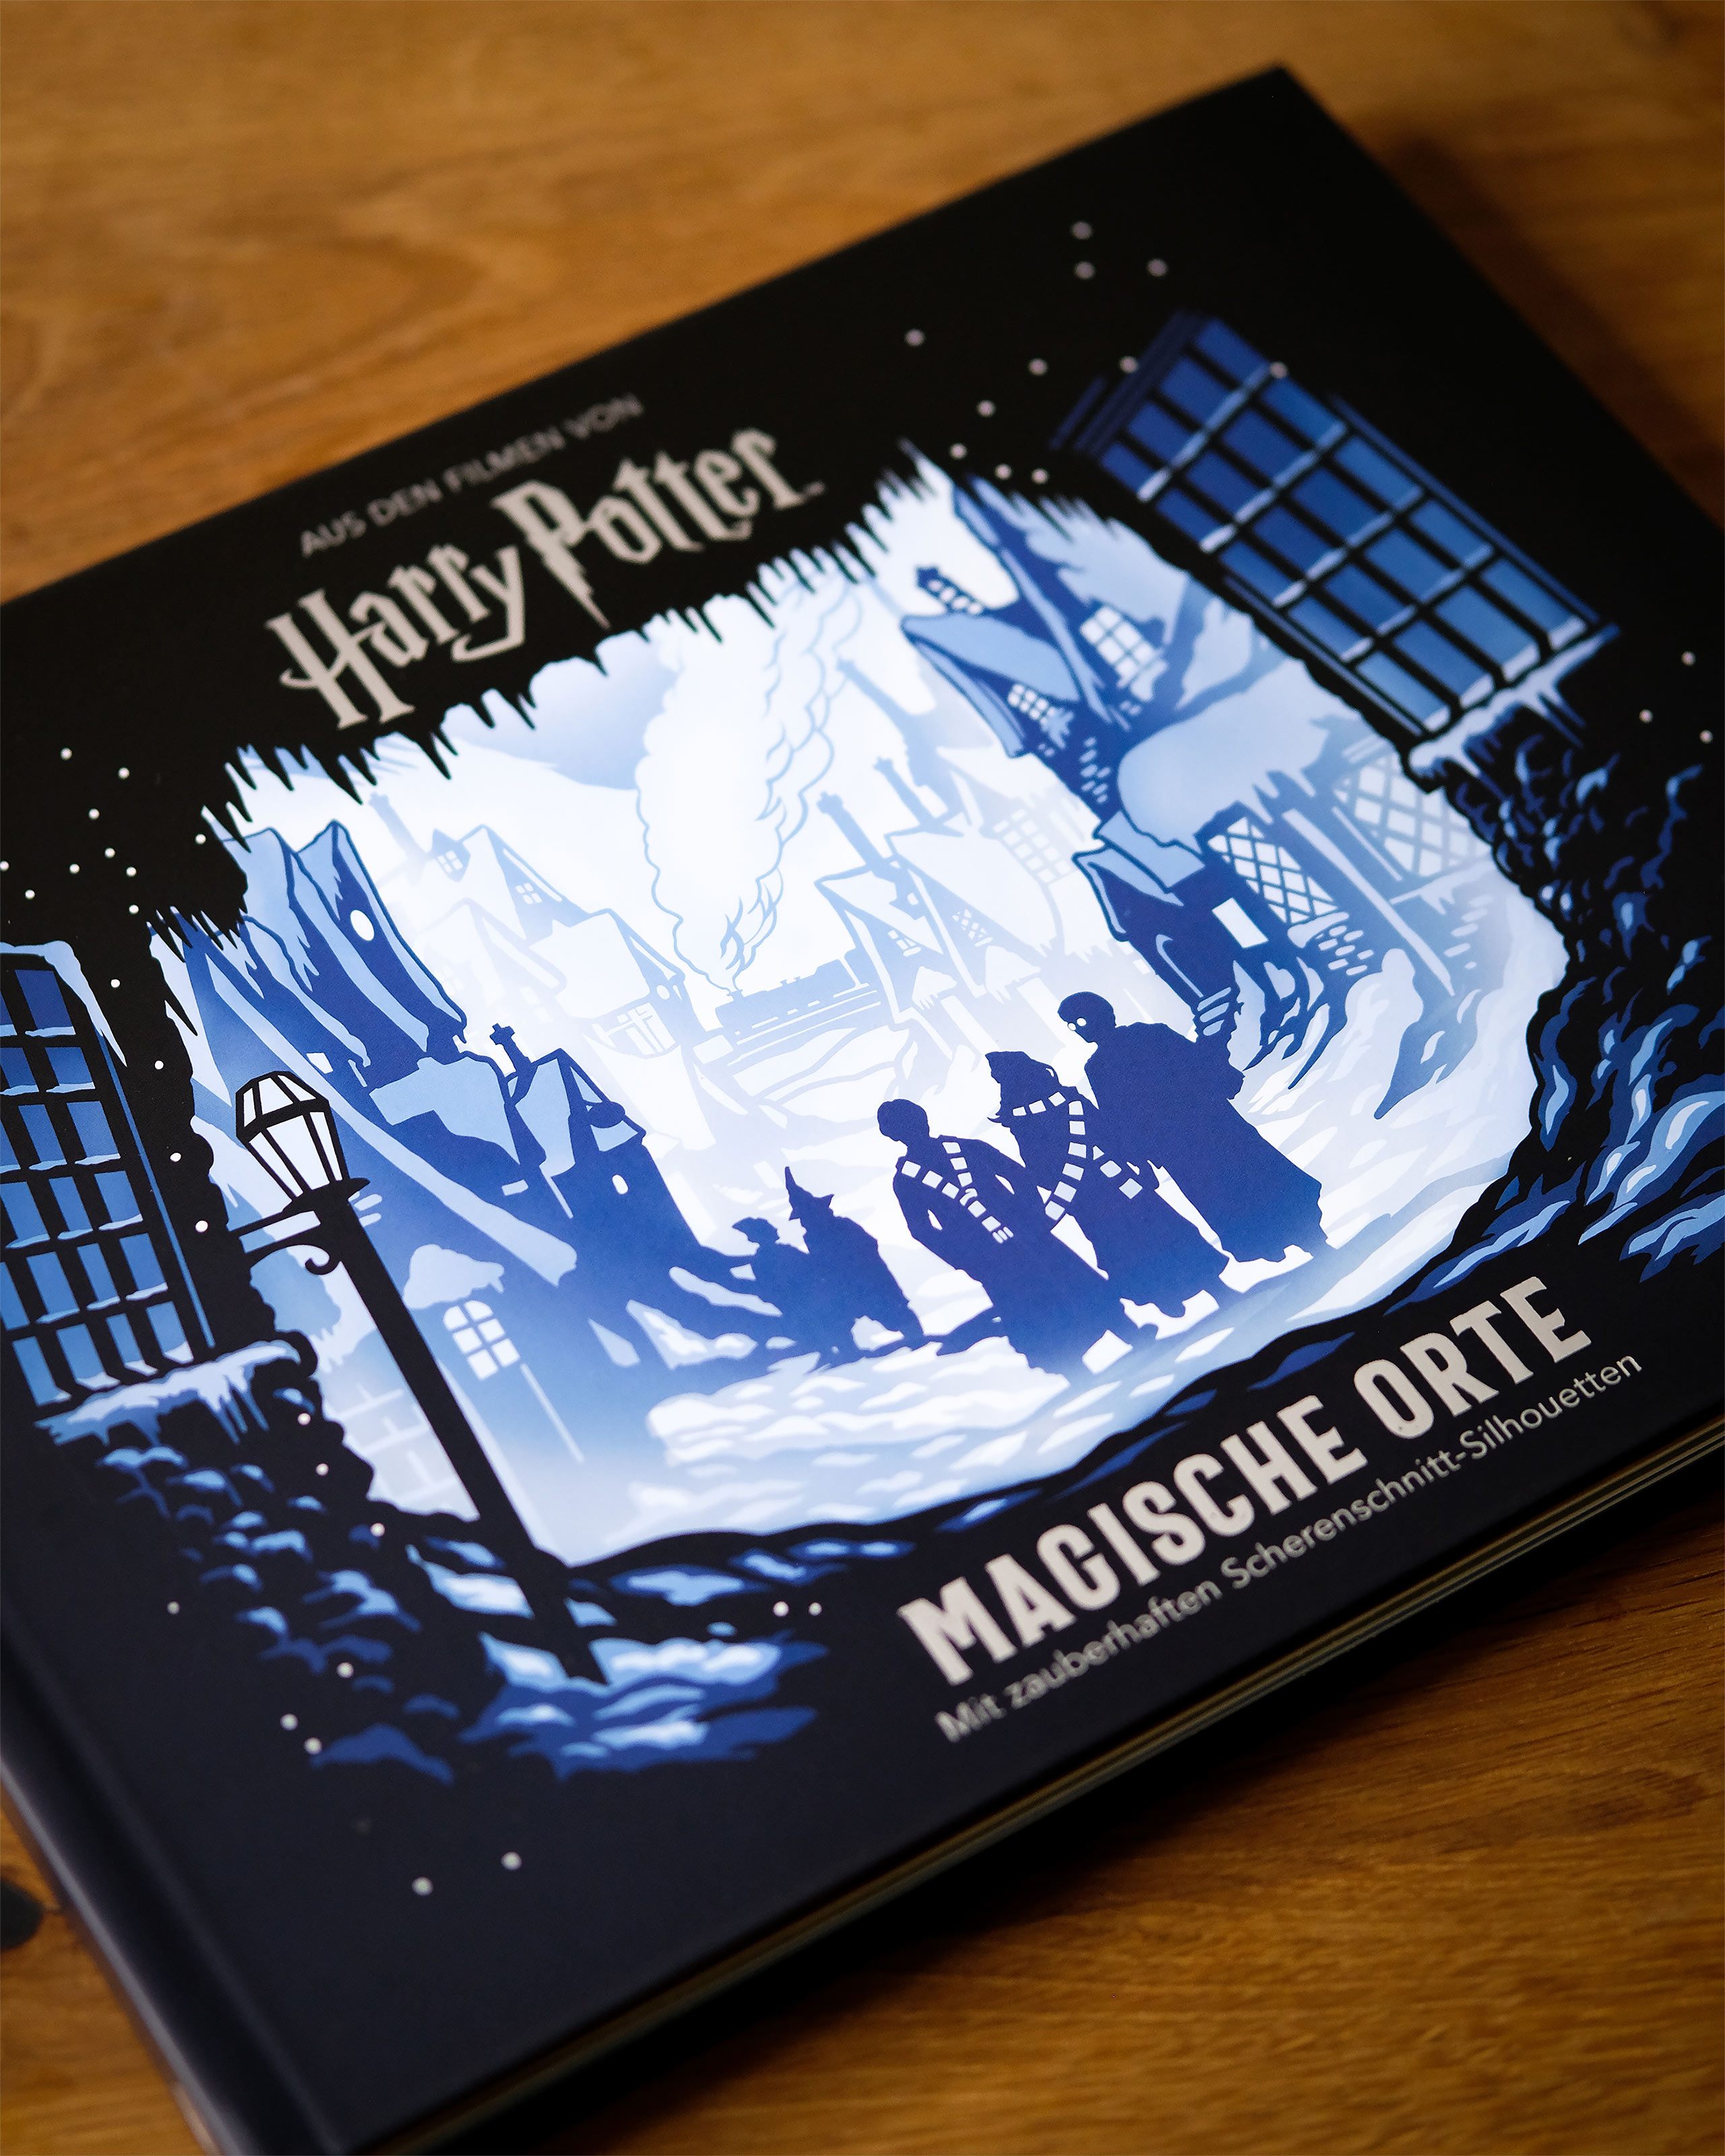 Harry Potter - Magische Orte in Scherenschnitt